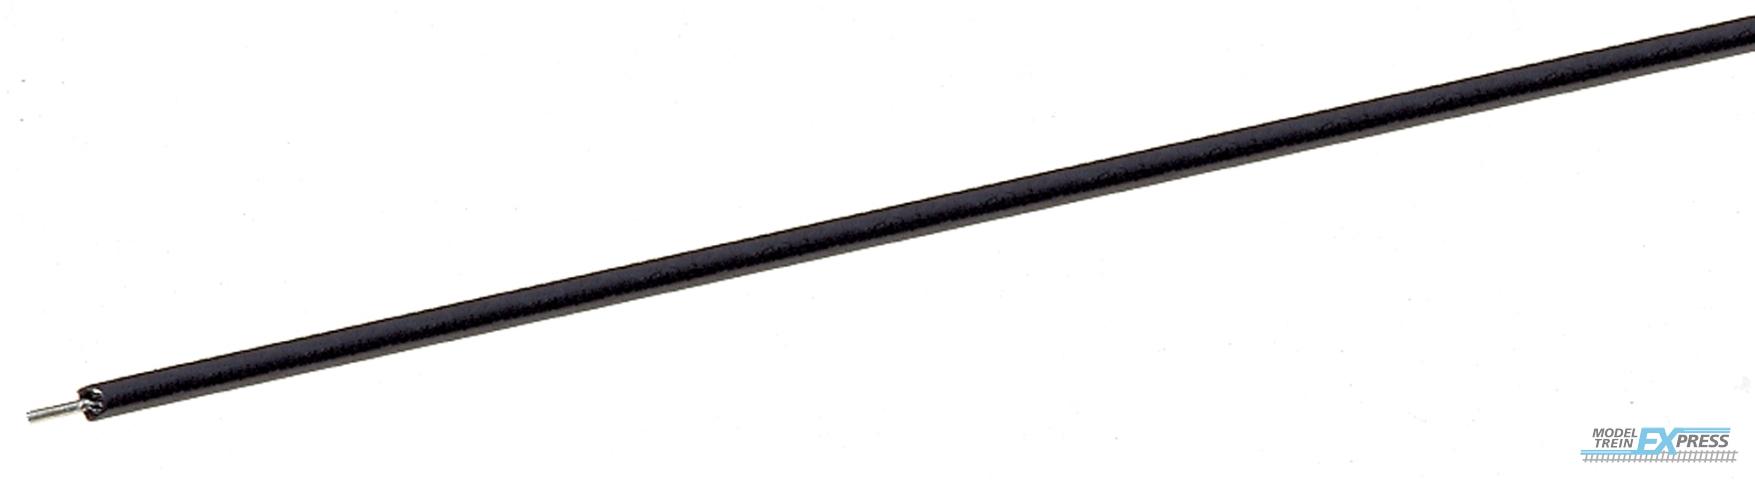 Roco 10630 Drahtrolle schwarz 10m